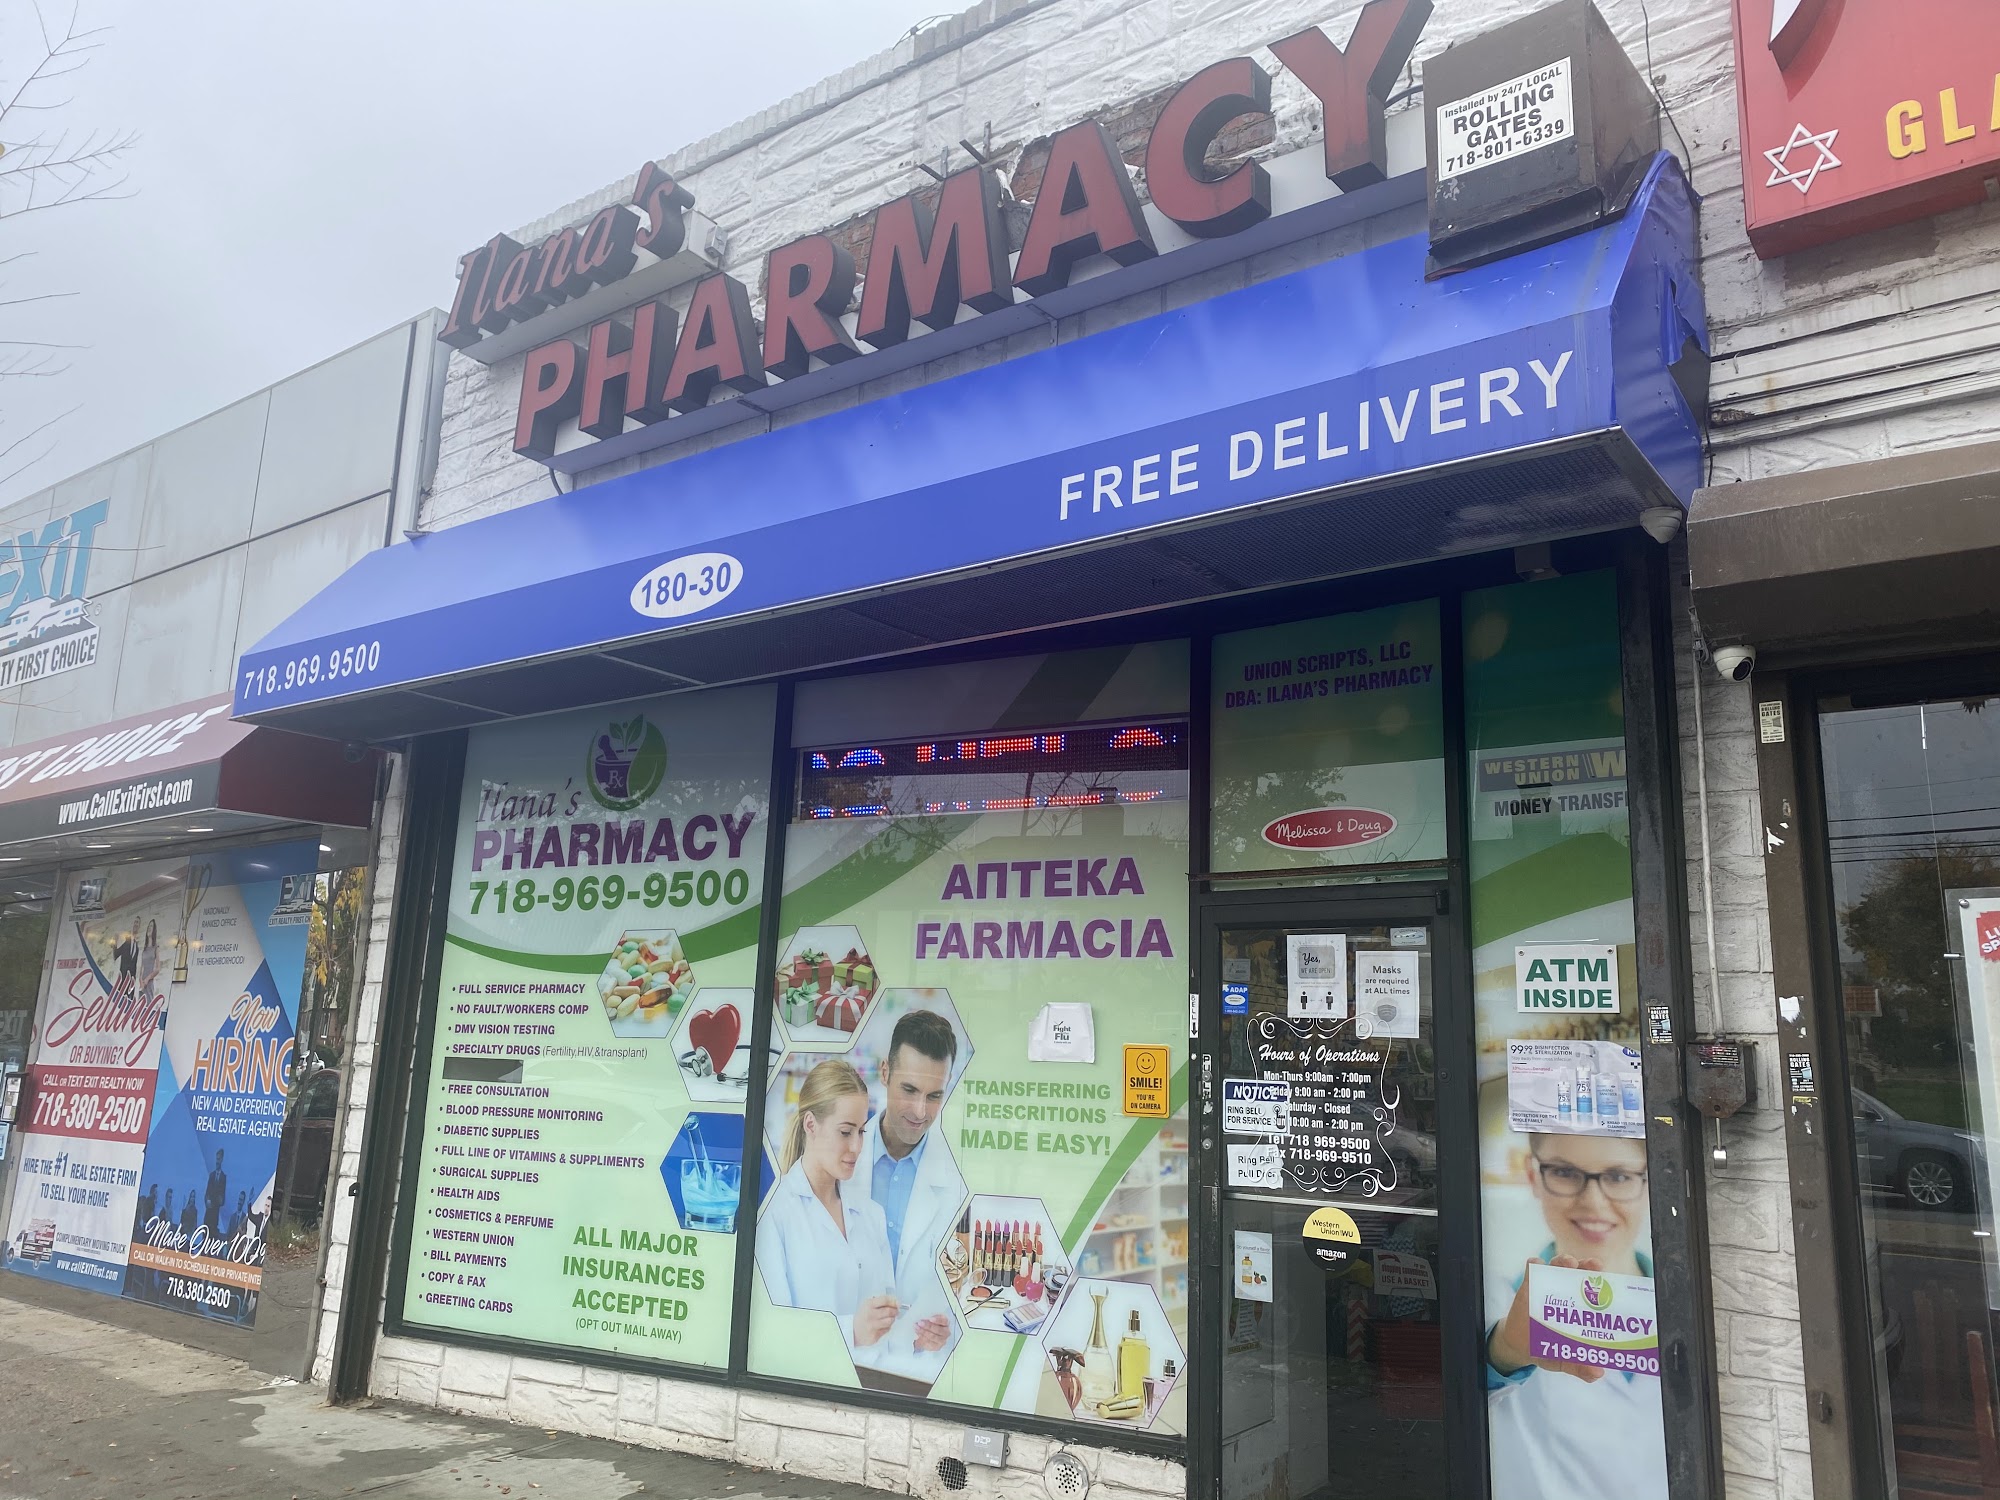 Ilana's Pharmacy